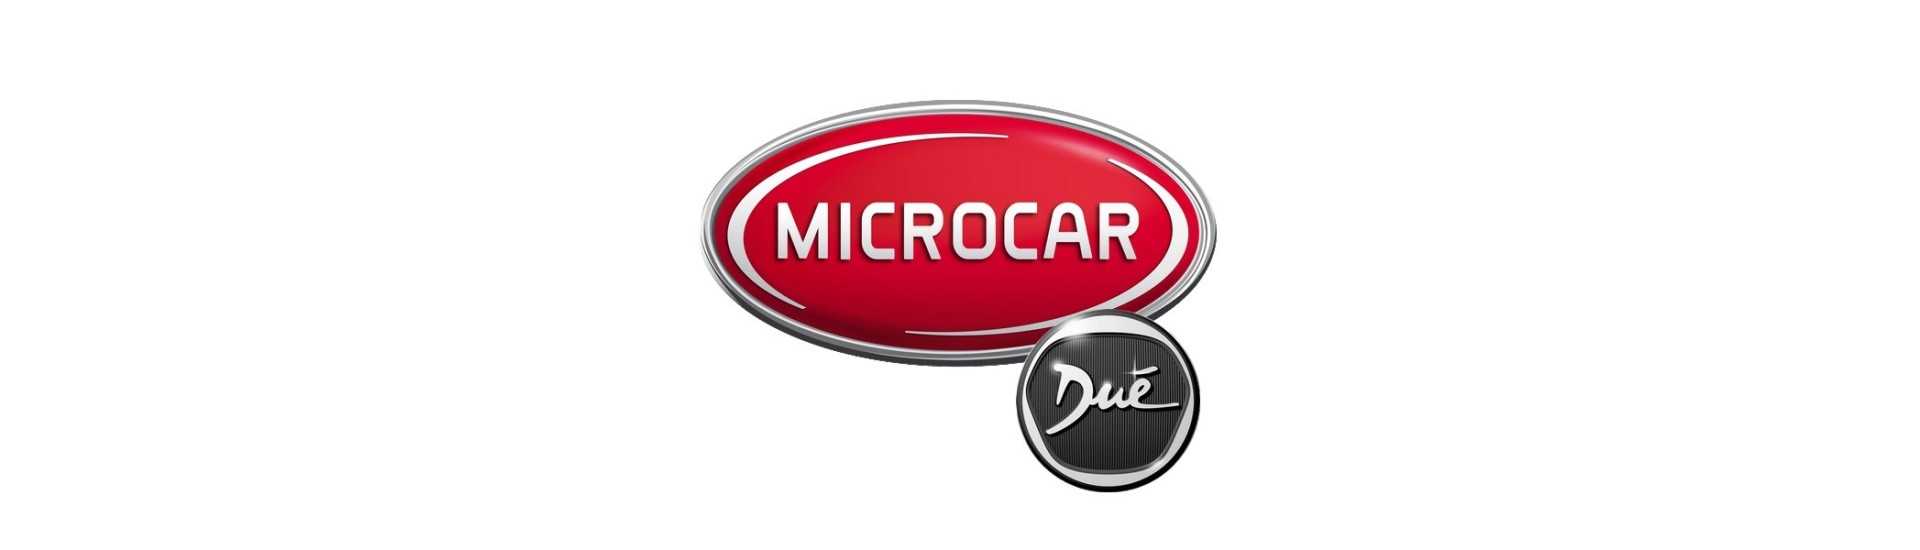 Best car maintenance kit without a permit Microcar Dué